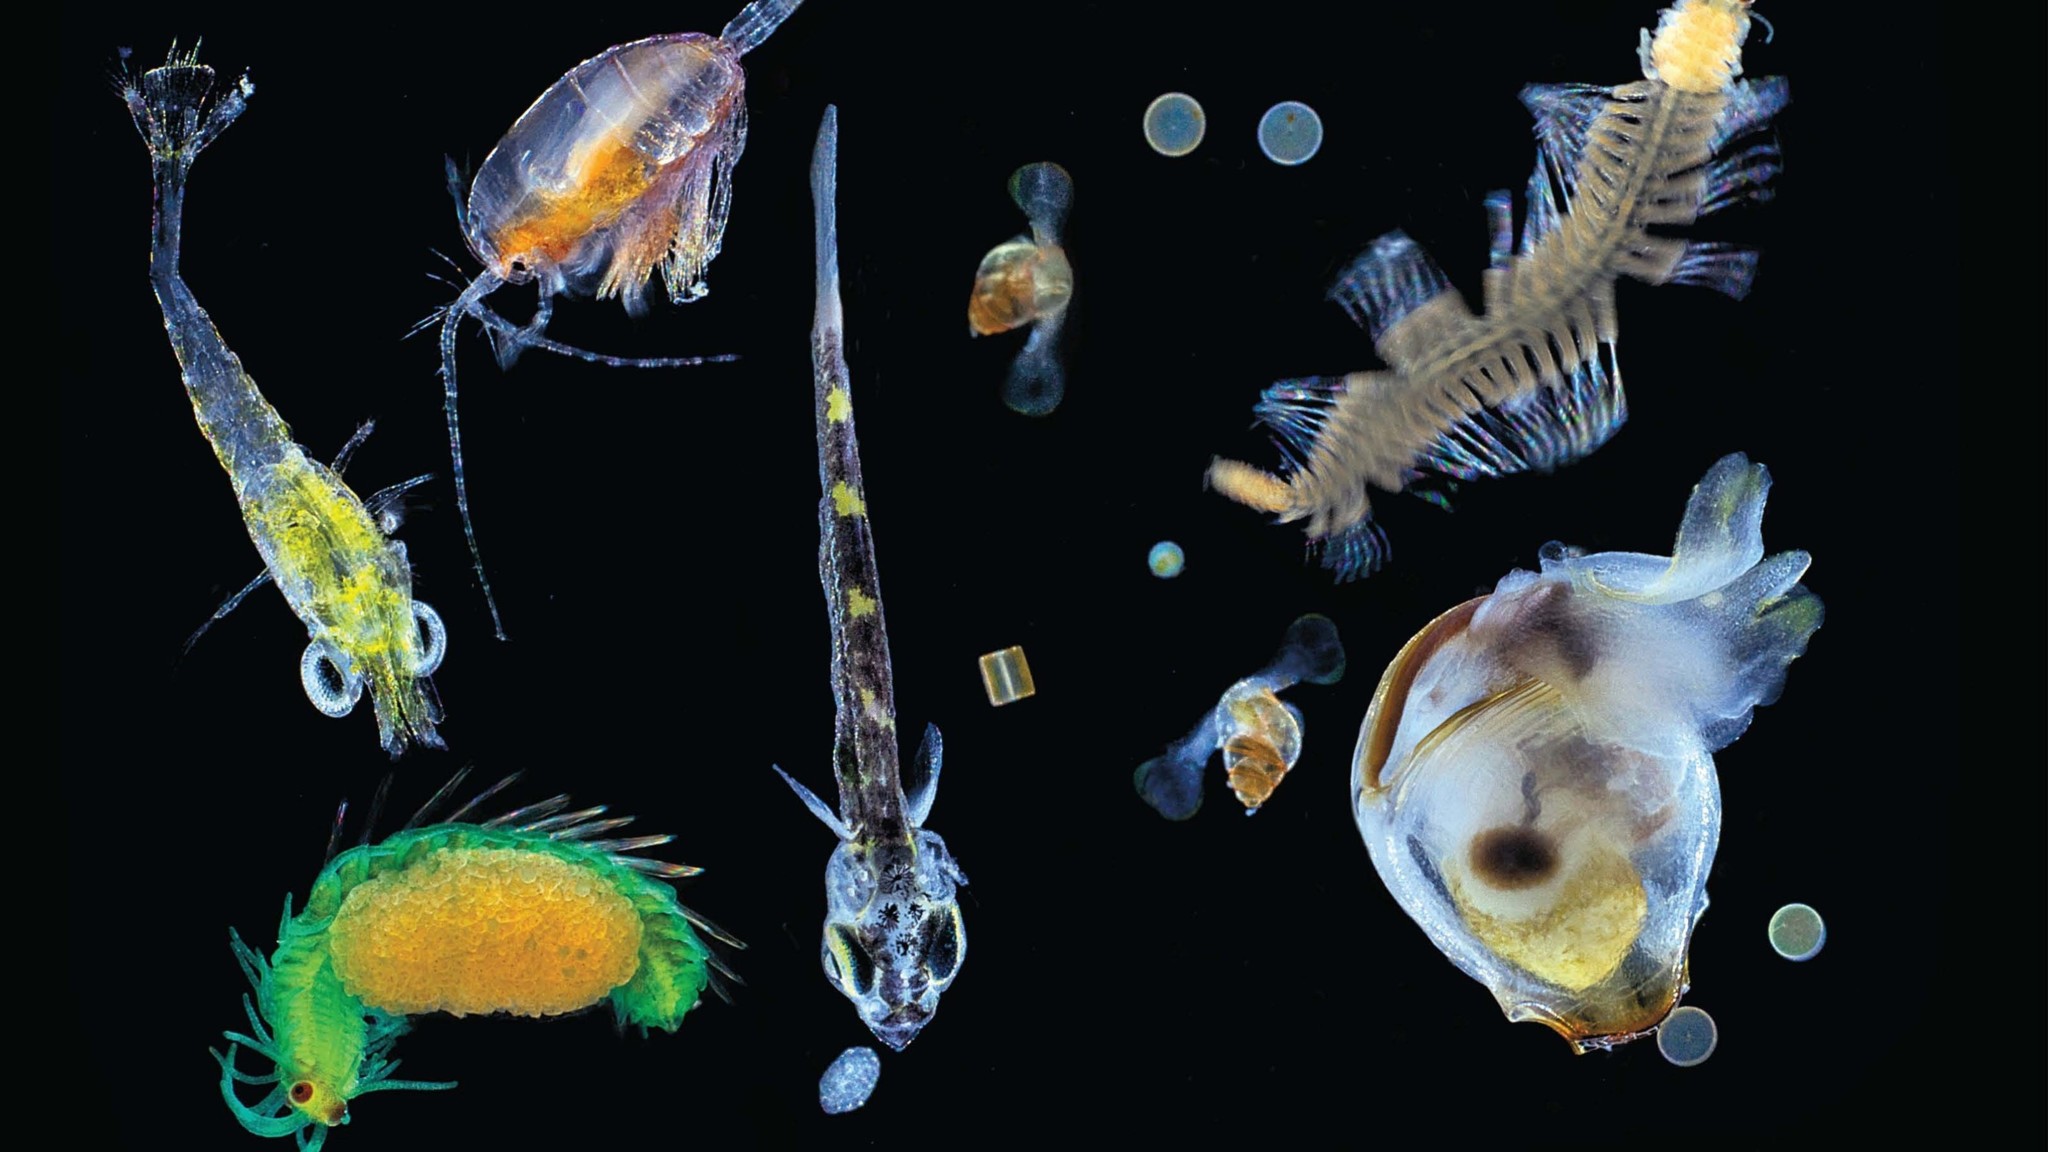 Планктон, найденный в образцах глубоководных отложений в ходе экспедиции Tara Oceans. Фото © Christian Sardet / CNRS / Tara expedition